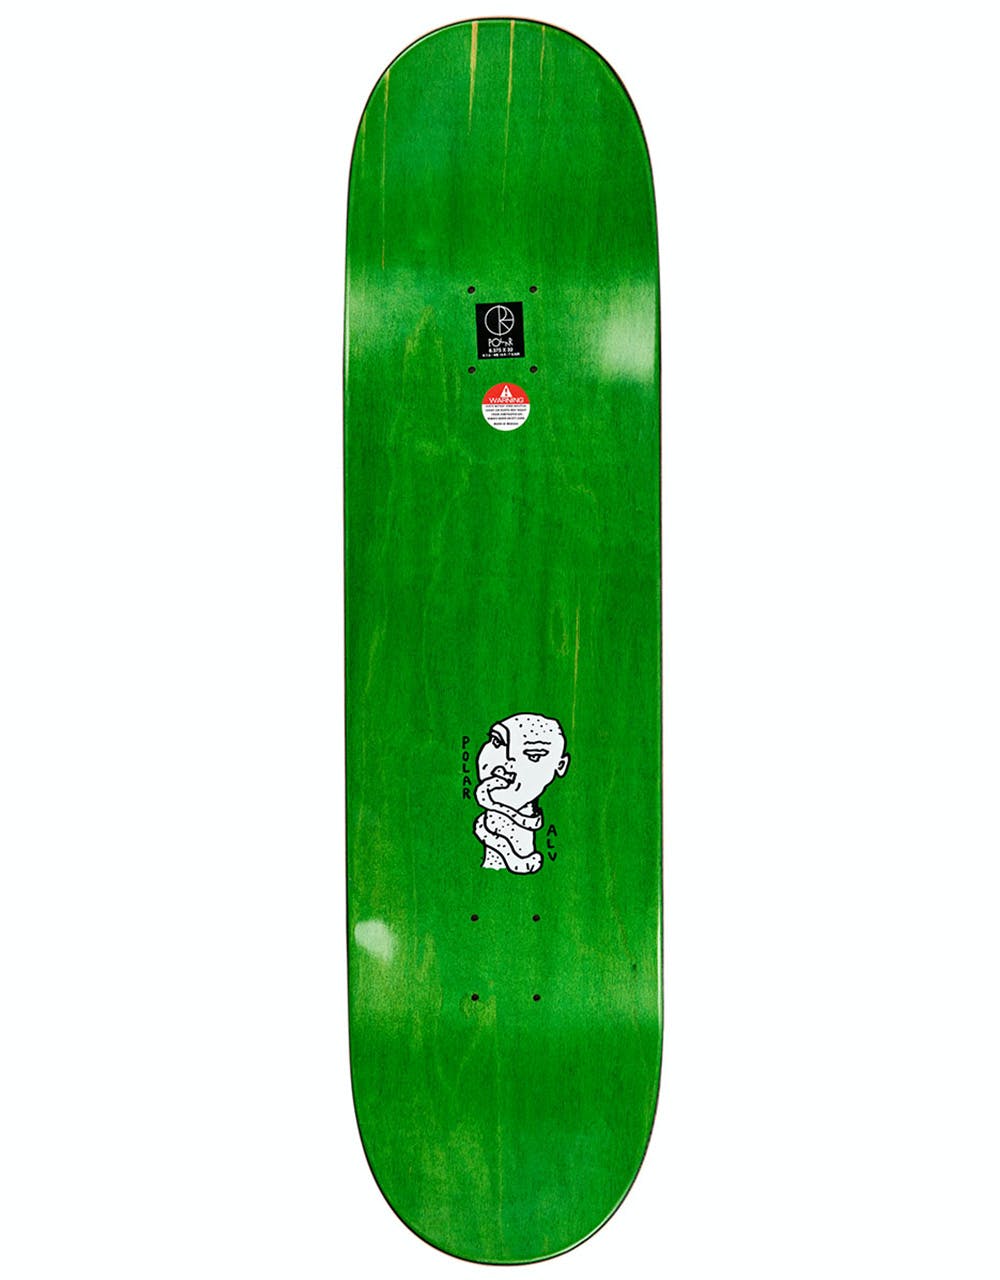 Polar Kind of Nice Skateboard Deck - 8.75"